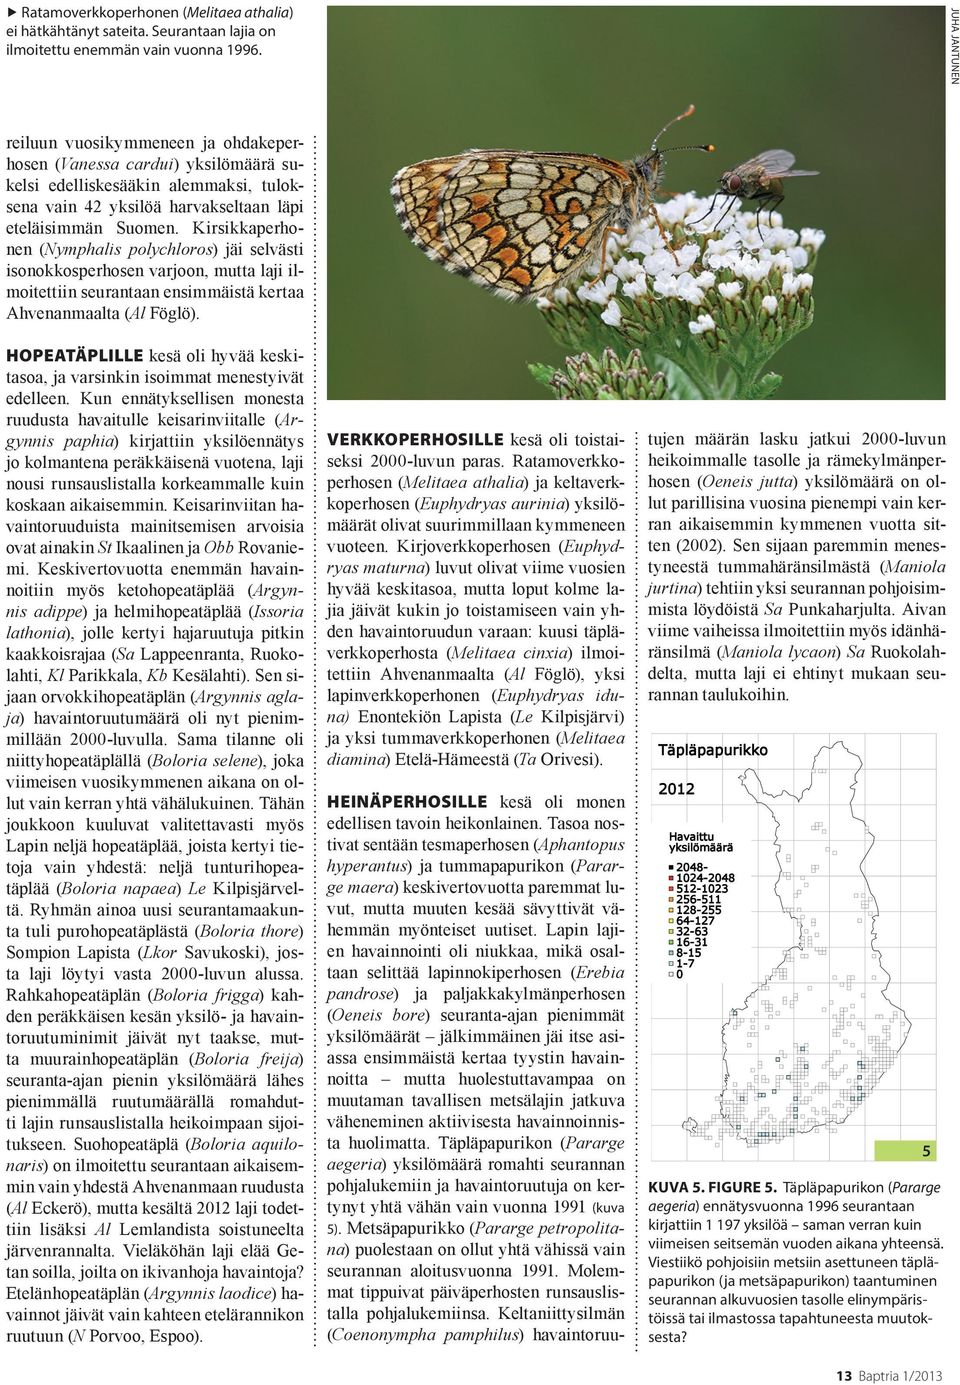 Kirsikkaperhonen (Nymphalis polychloros) jäi selvästi isonokkosperhosen varjoon, mutta laji ilmoitettiin seurantaan ensimmäistä kertaa Ahvenanmaalta (Al Föglö).